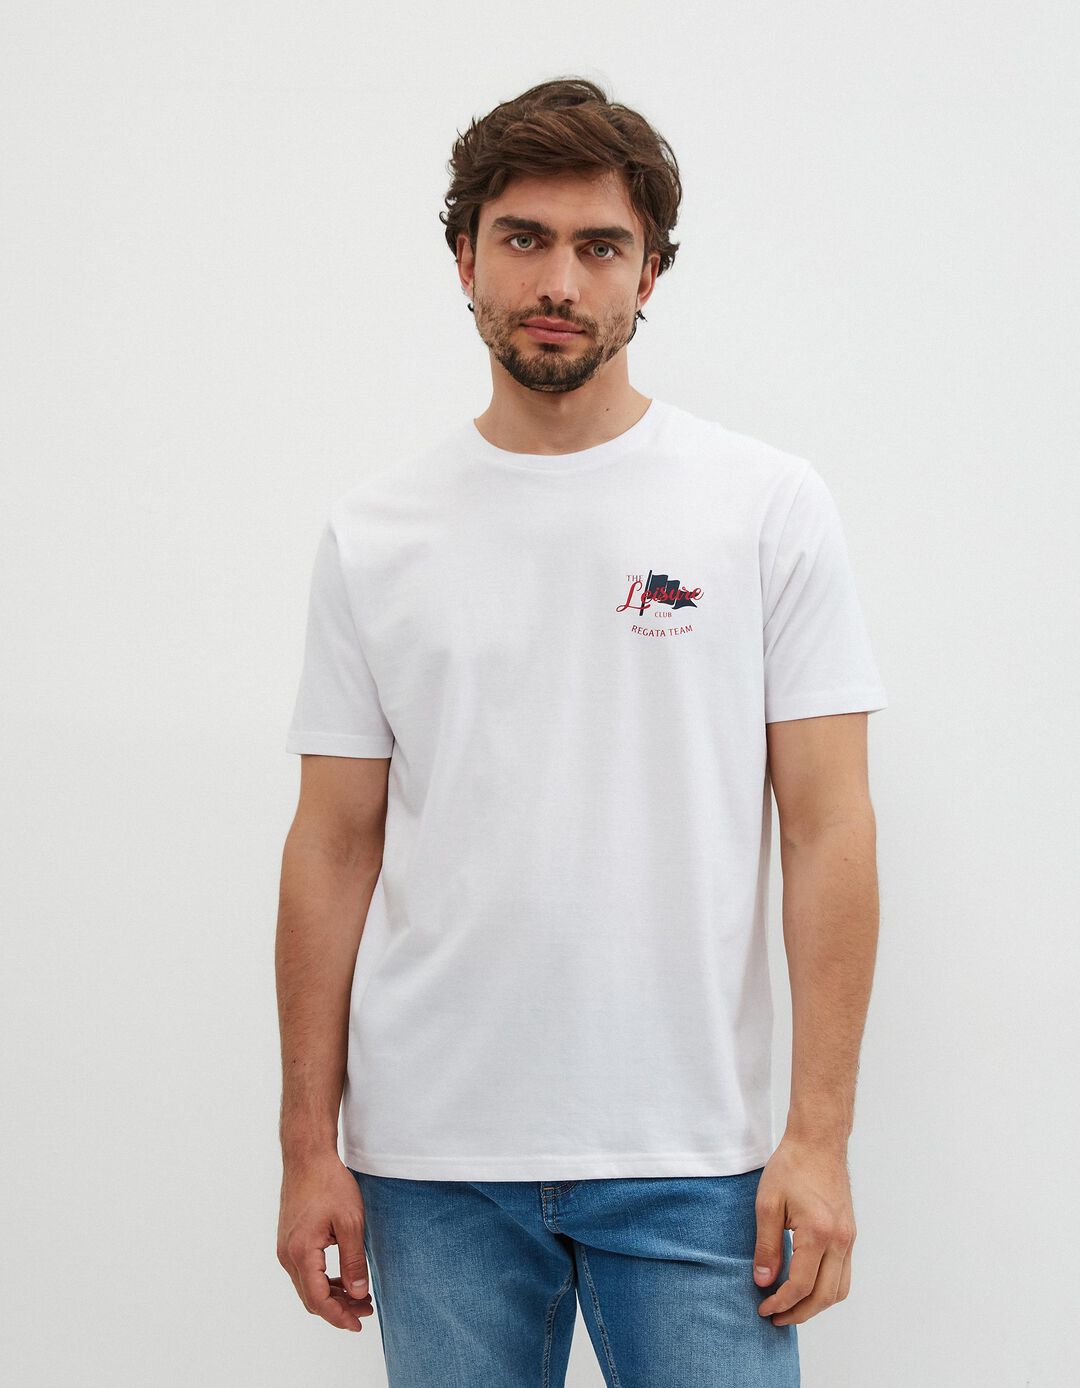 T-shirt Estampado, Homem, Branco